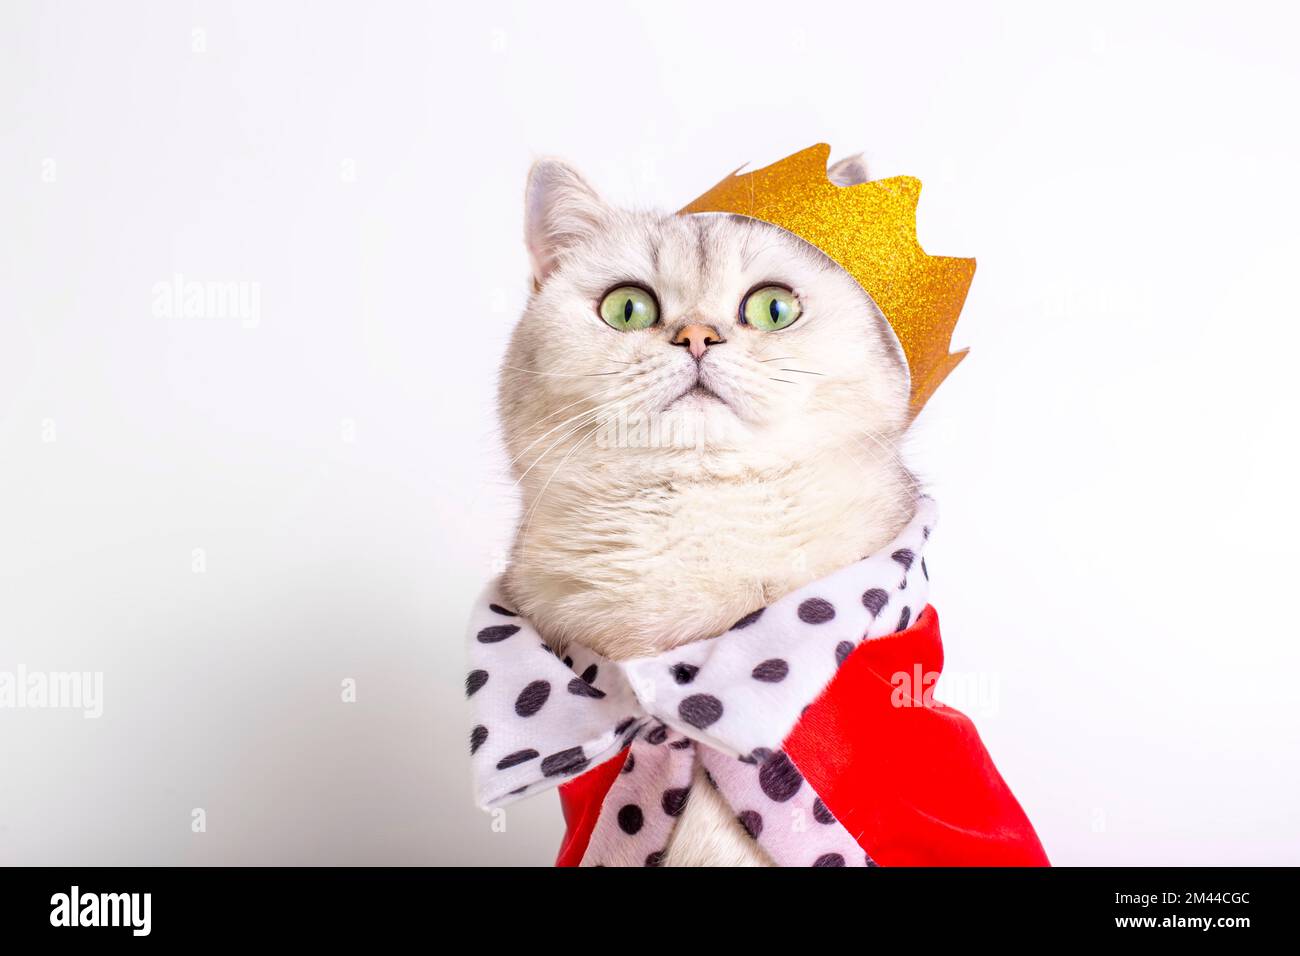 Carino gatto bianco in una corona dorata e mantello rosso, seduto su uno sfondo bianco Foto Stock